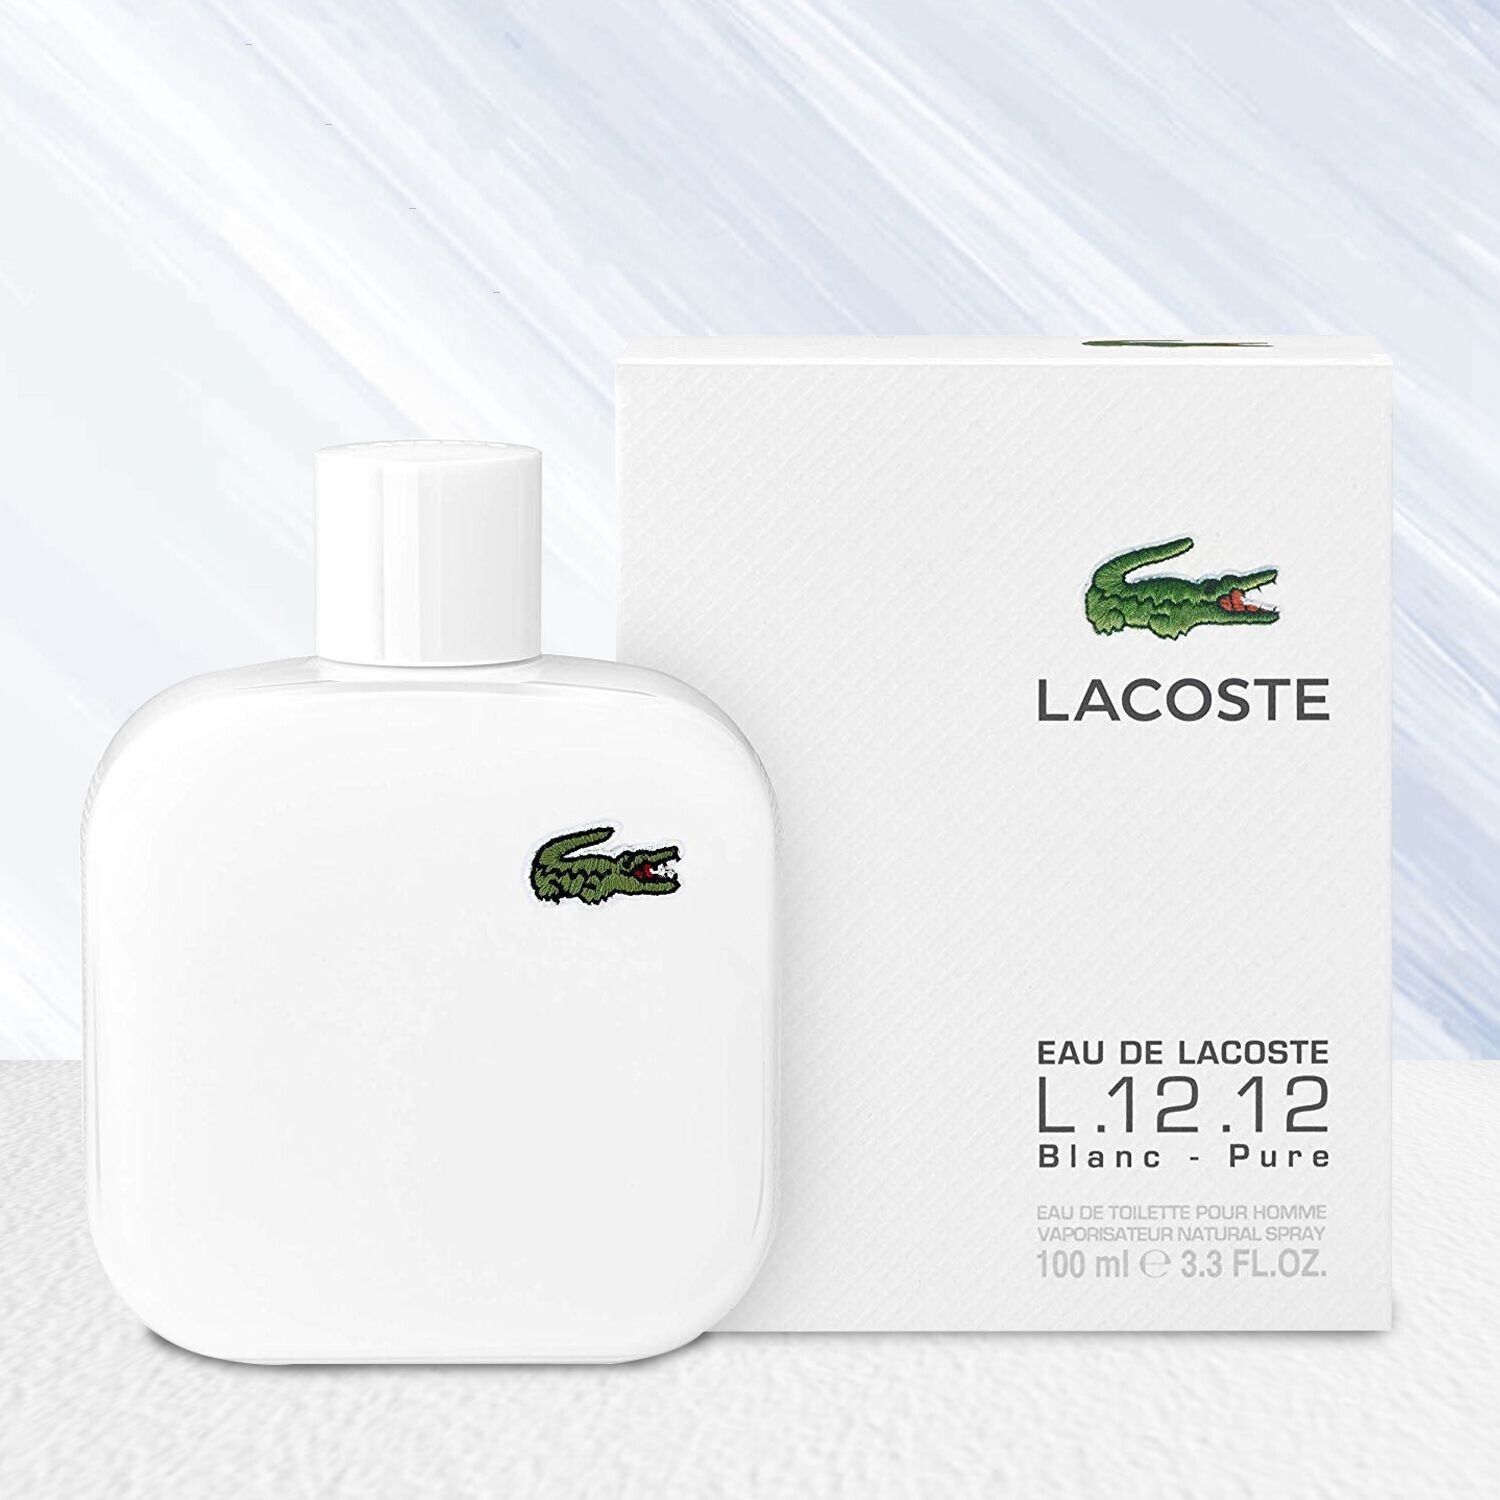 New Lacoste Men\'s Eau de Toilette Spray 3.3 oz Eau De Lacoste L12.12 Blanc Pure